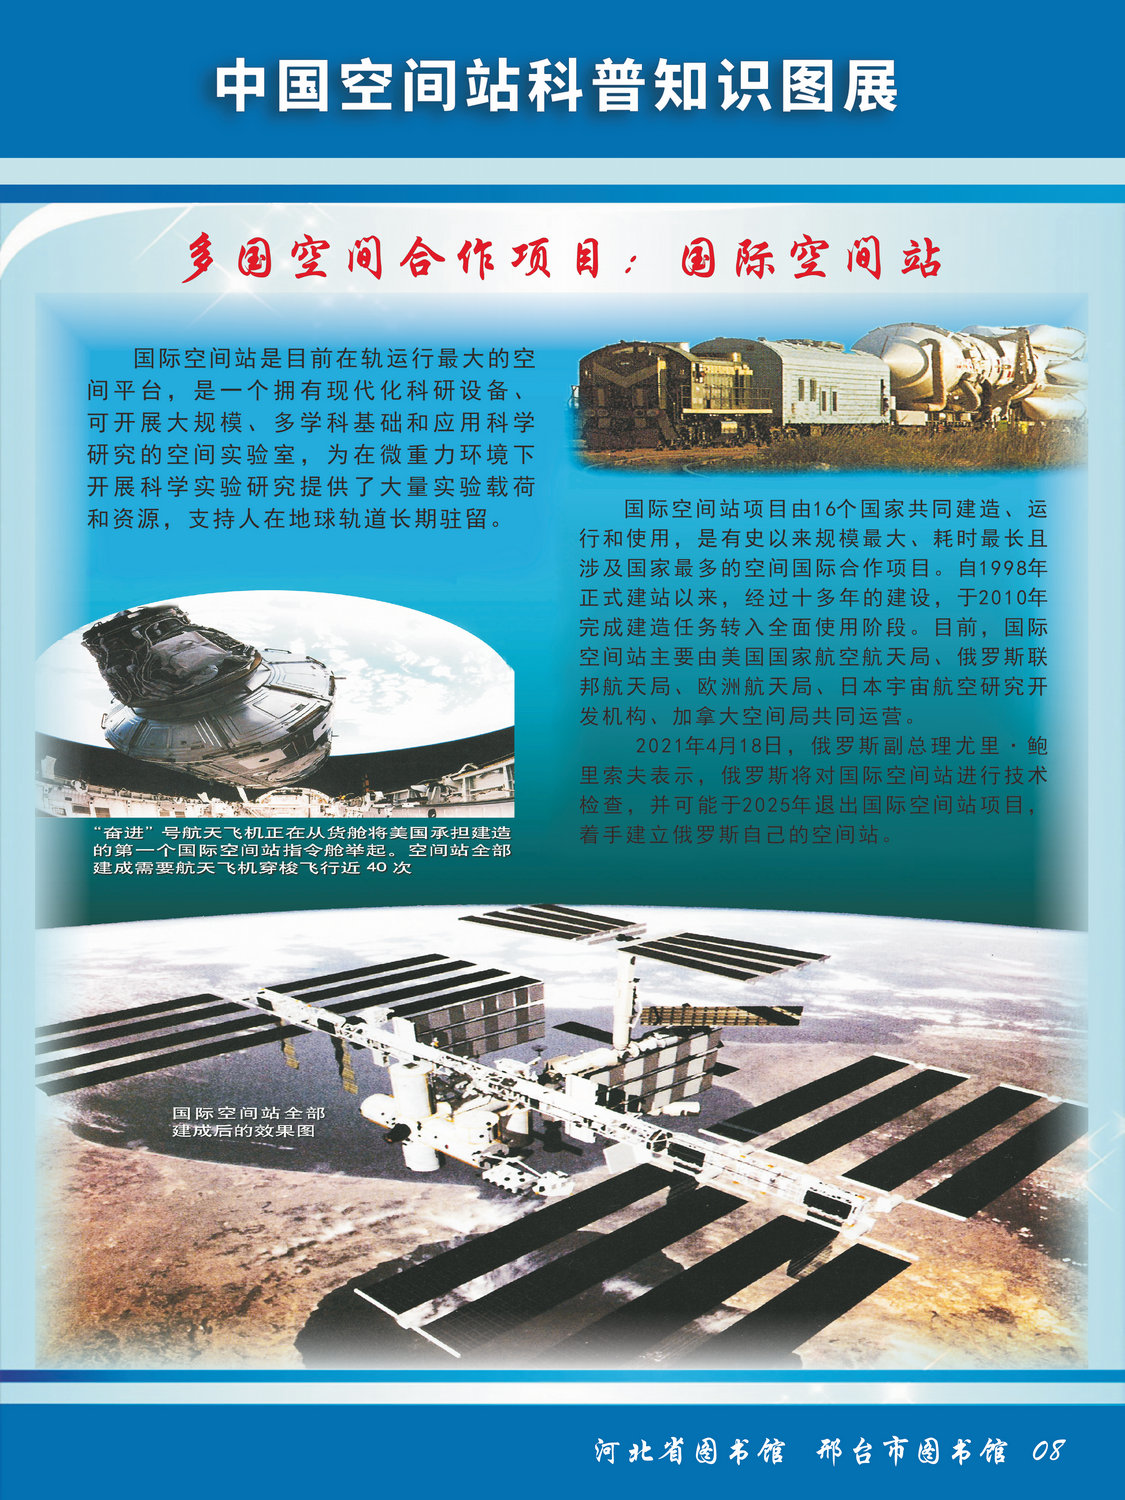 中国空间站科普知识图文展_图8